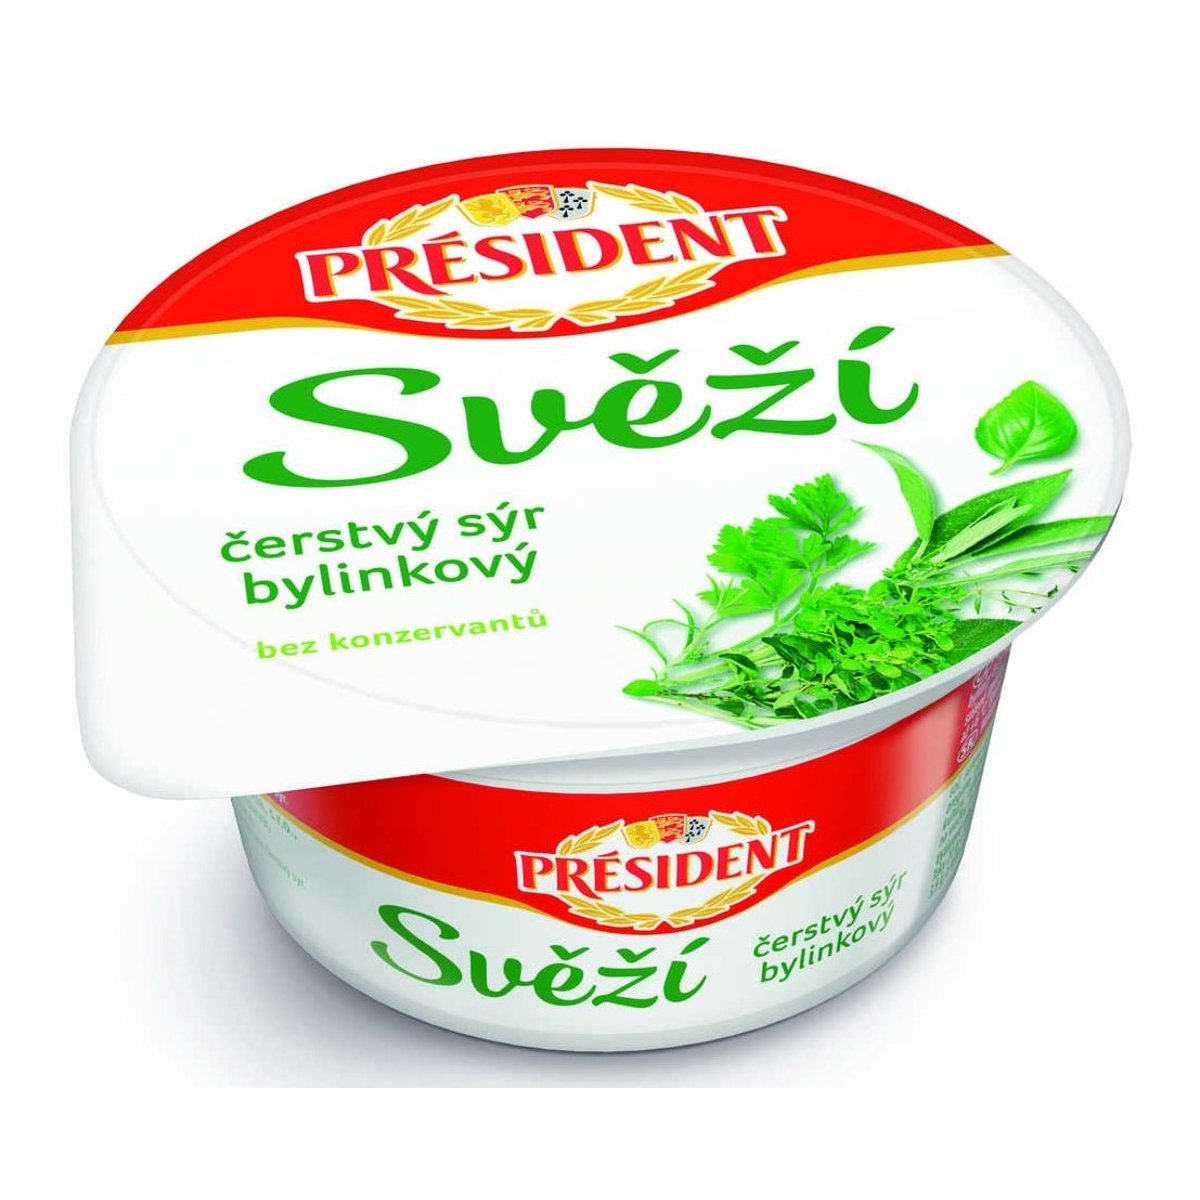 Président Svěží čerstvý sýr bylinkový